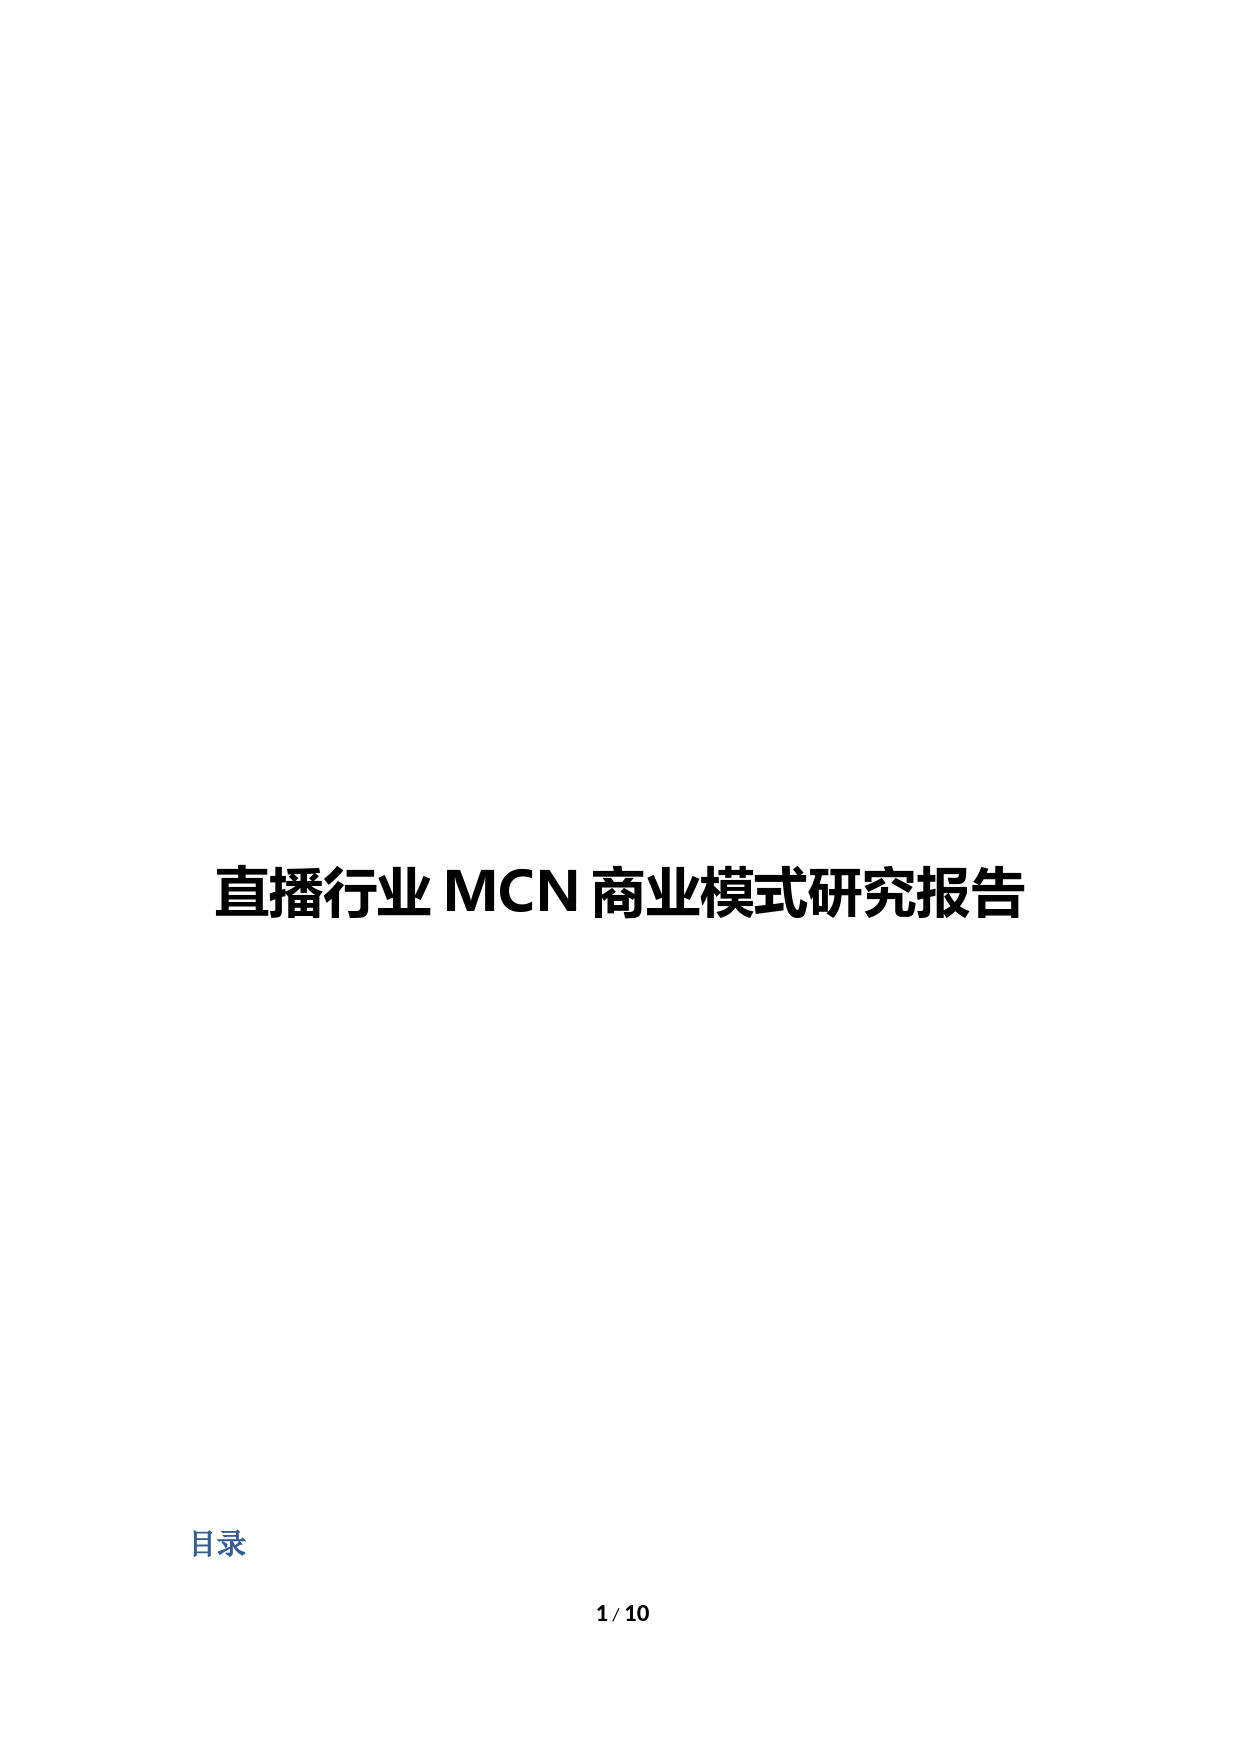 直播行业MCN商业模式研究报告